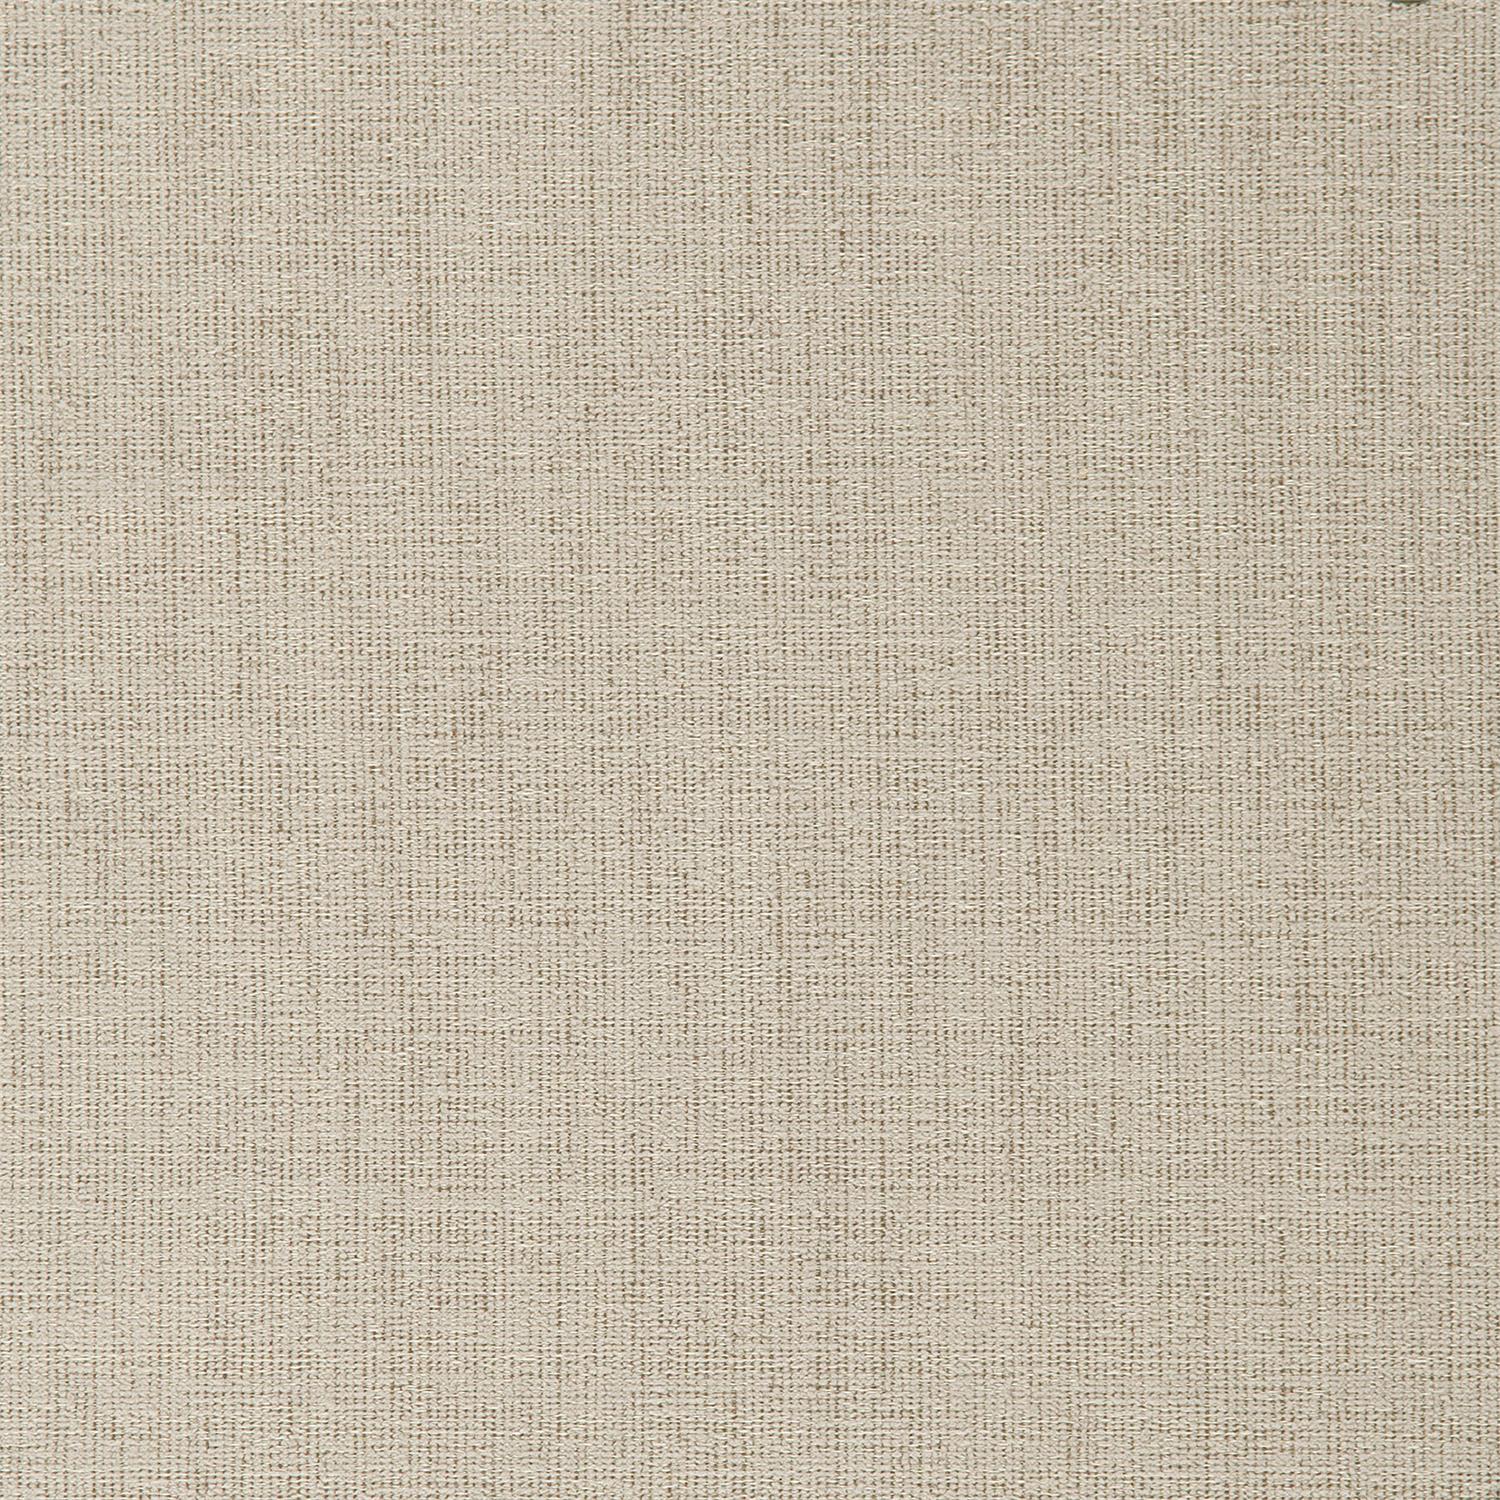 5533-002 Fabric